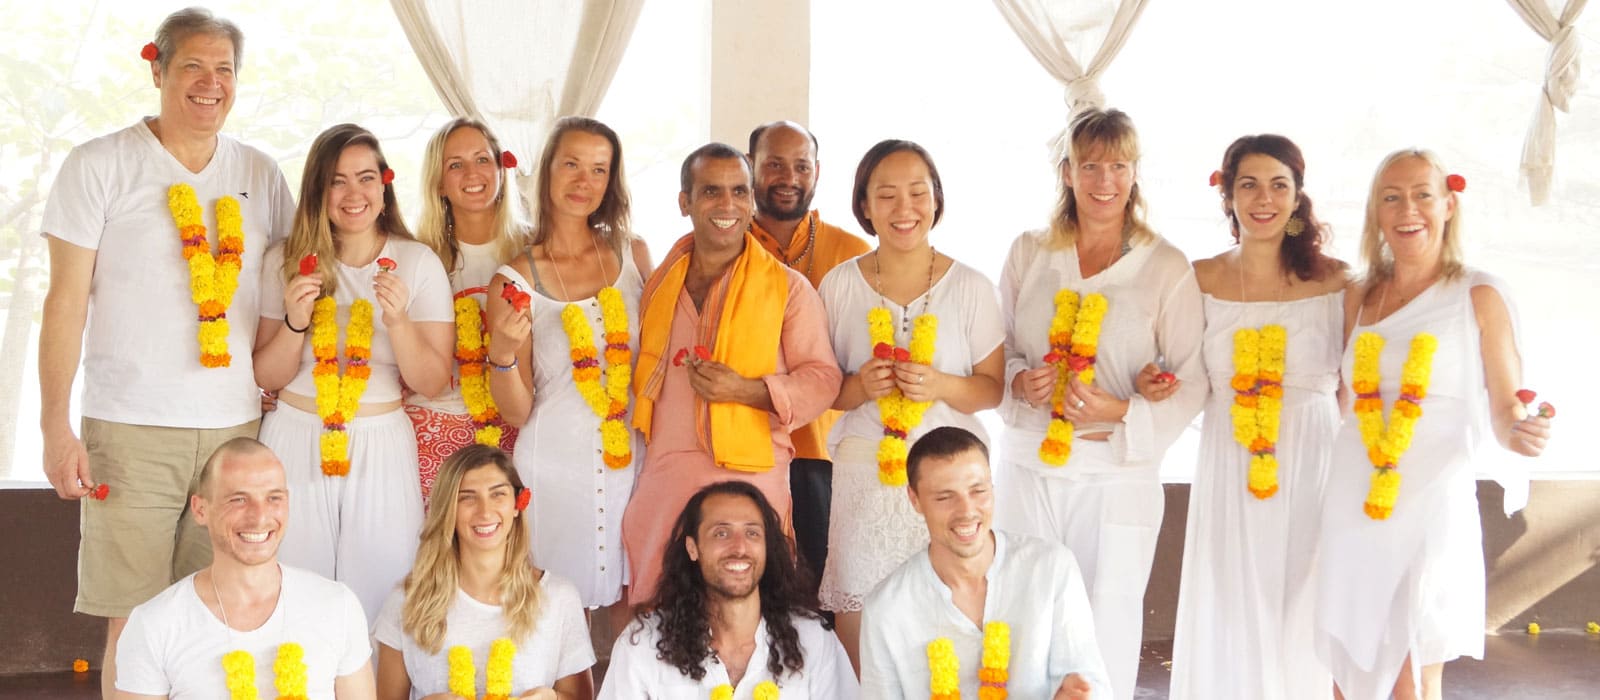 vishuddhi yoga school dharamsala india11525685903.jpg